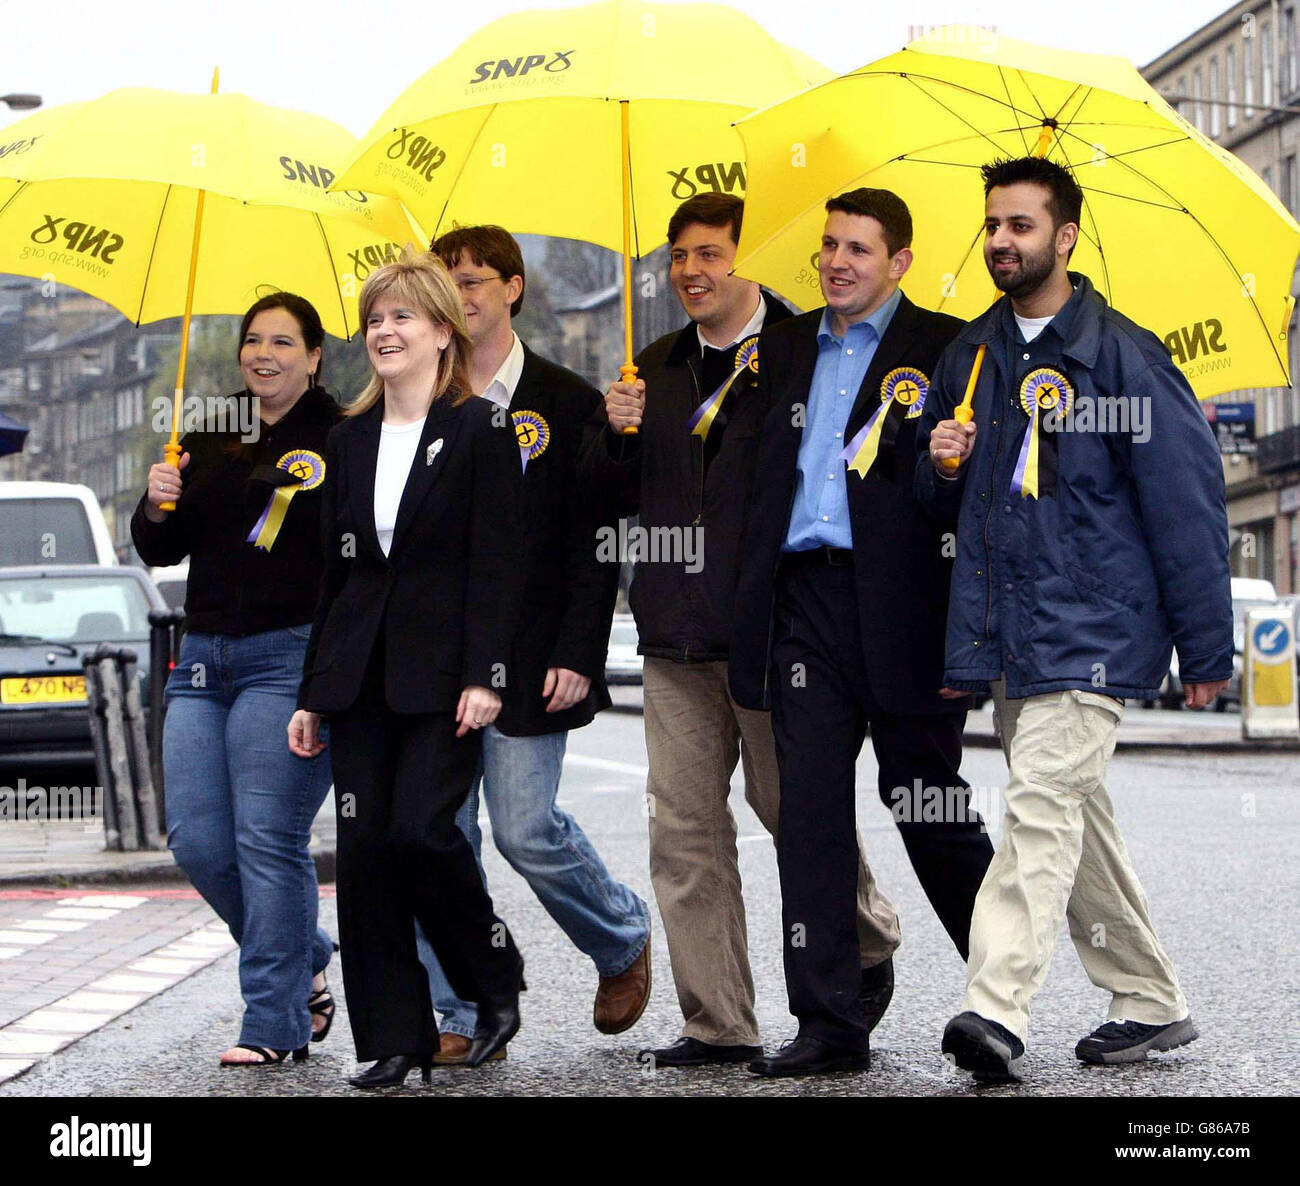 Die stellvertretende Vorsitzende der Scottish National Party, Nicola Sturgeon, trifft junge Unterstützer (von links nach rechts), Laura Love, Davie Hutchieson, Jamie Hepburn, Graeme Hendry und Osama Saeed Bhutta. Stockfoto